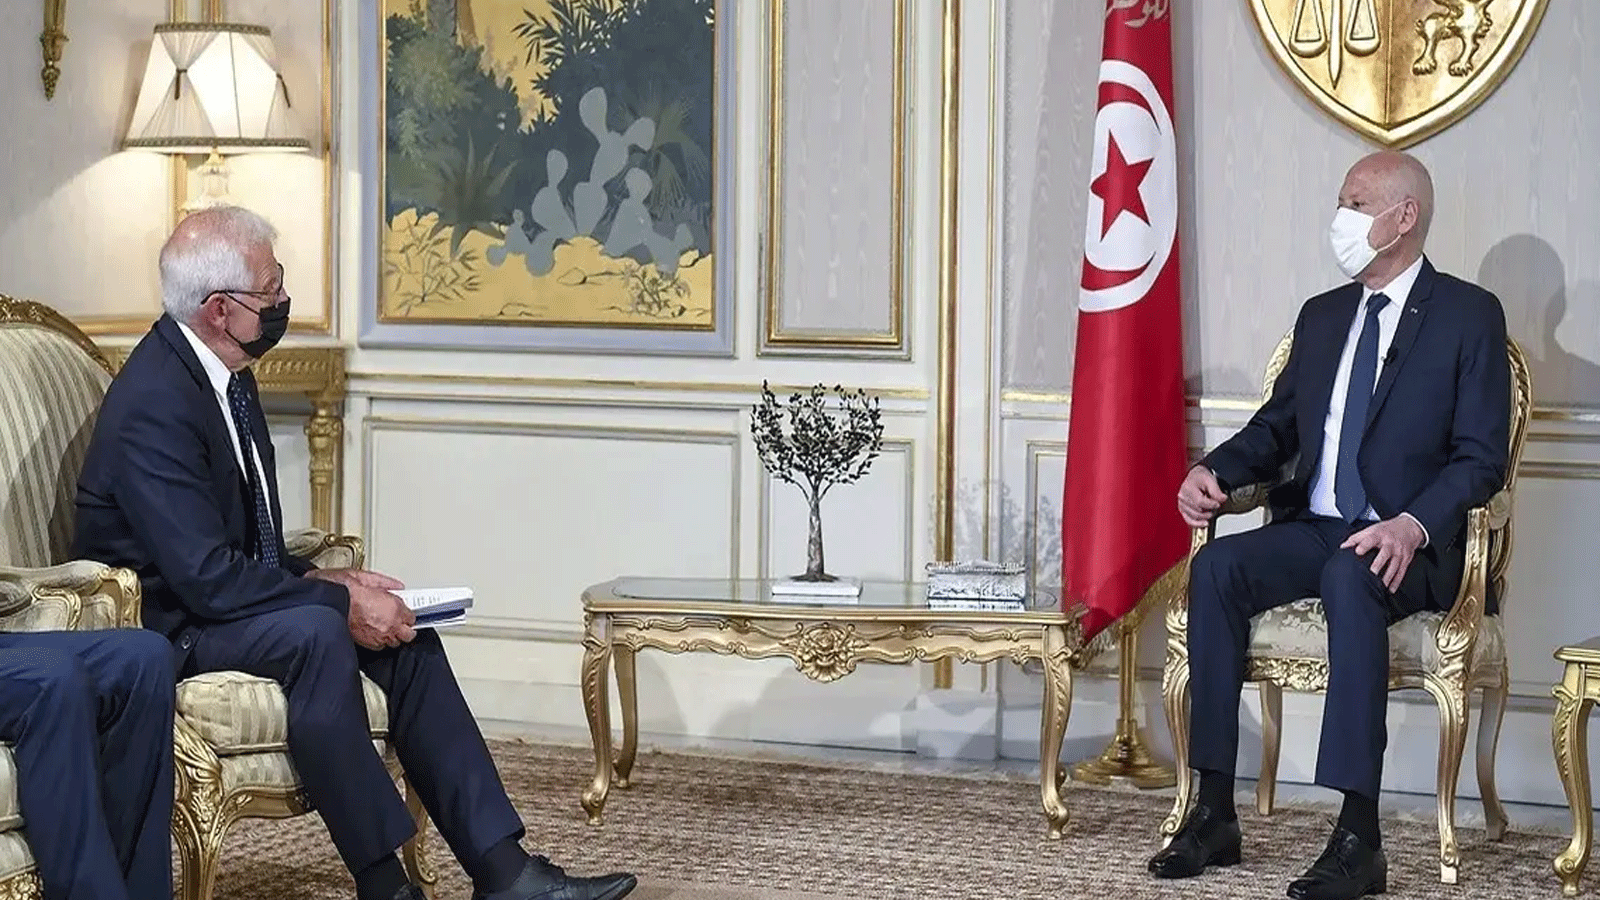  الرئيس التونسي قيس سعيد (يمين) يلتقي بالممثل الأعلى للاتحاد الأوروبي للشؤون الخارجية والسياسة الأمنية جوزيب بوريل، في قصر قرطاج بالعاصمة تونس. في 10أيلول\ سبتمبر 2021